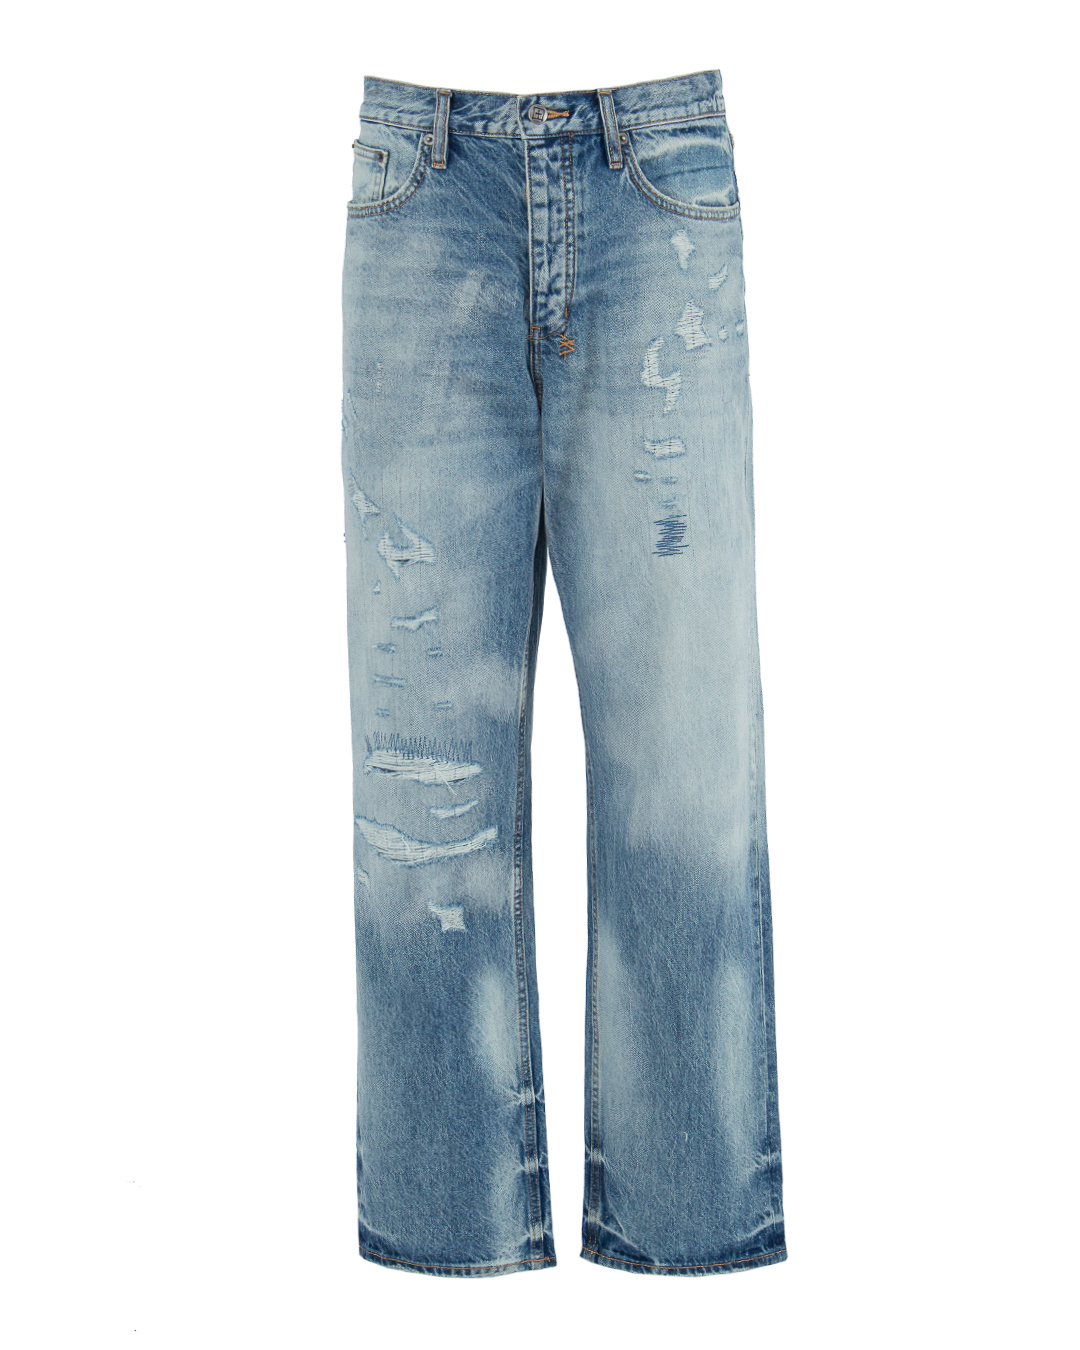 джинсы KSUBI MSP23DJ009 синий 34, размер 34 - фото 1